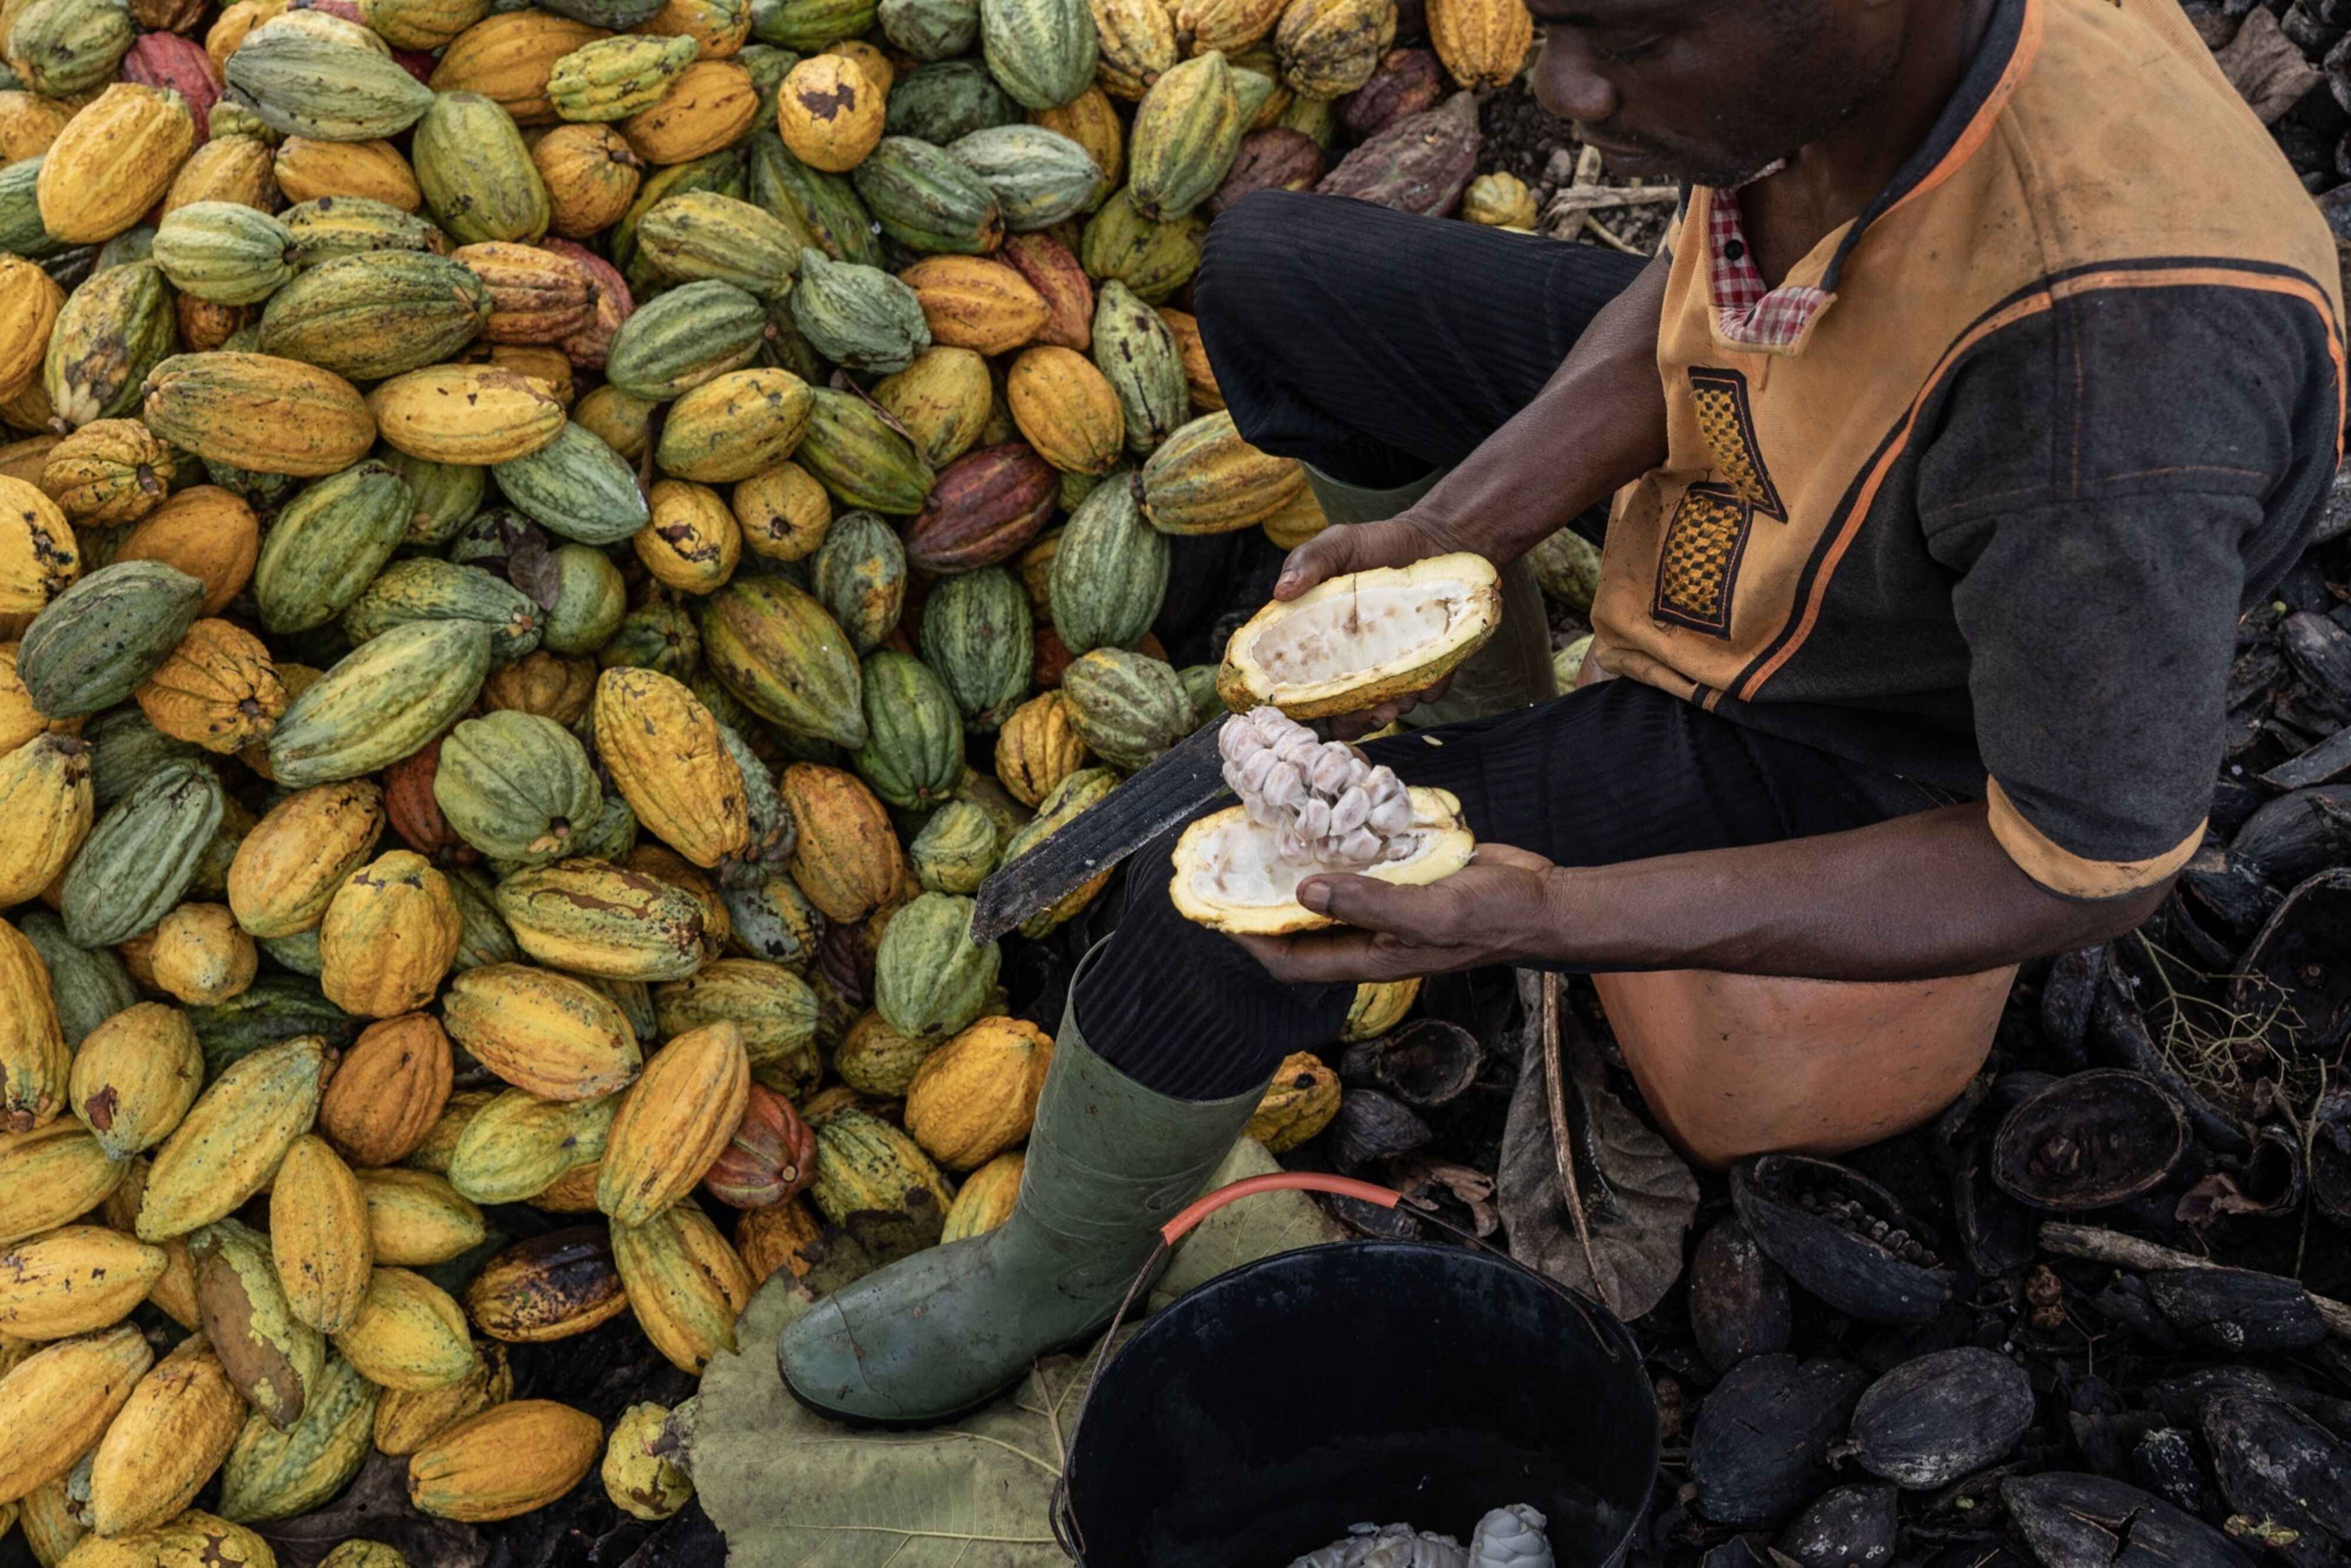 Precio del cacao alcanza su nivel más alto en 44 años